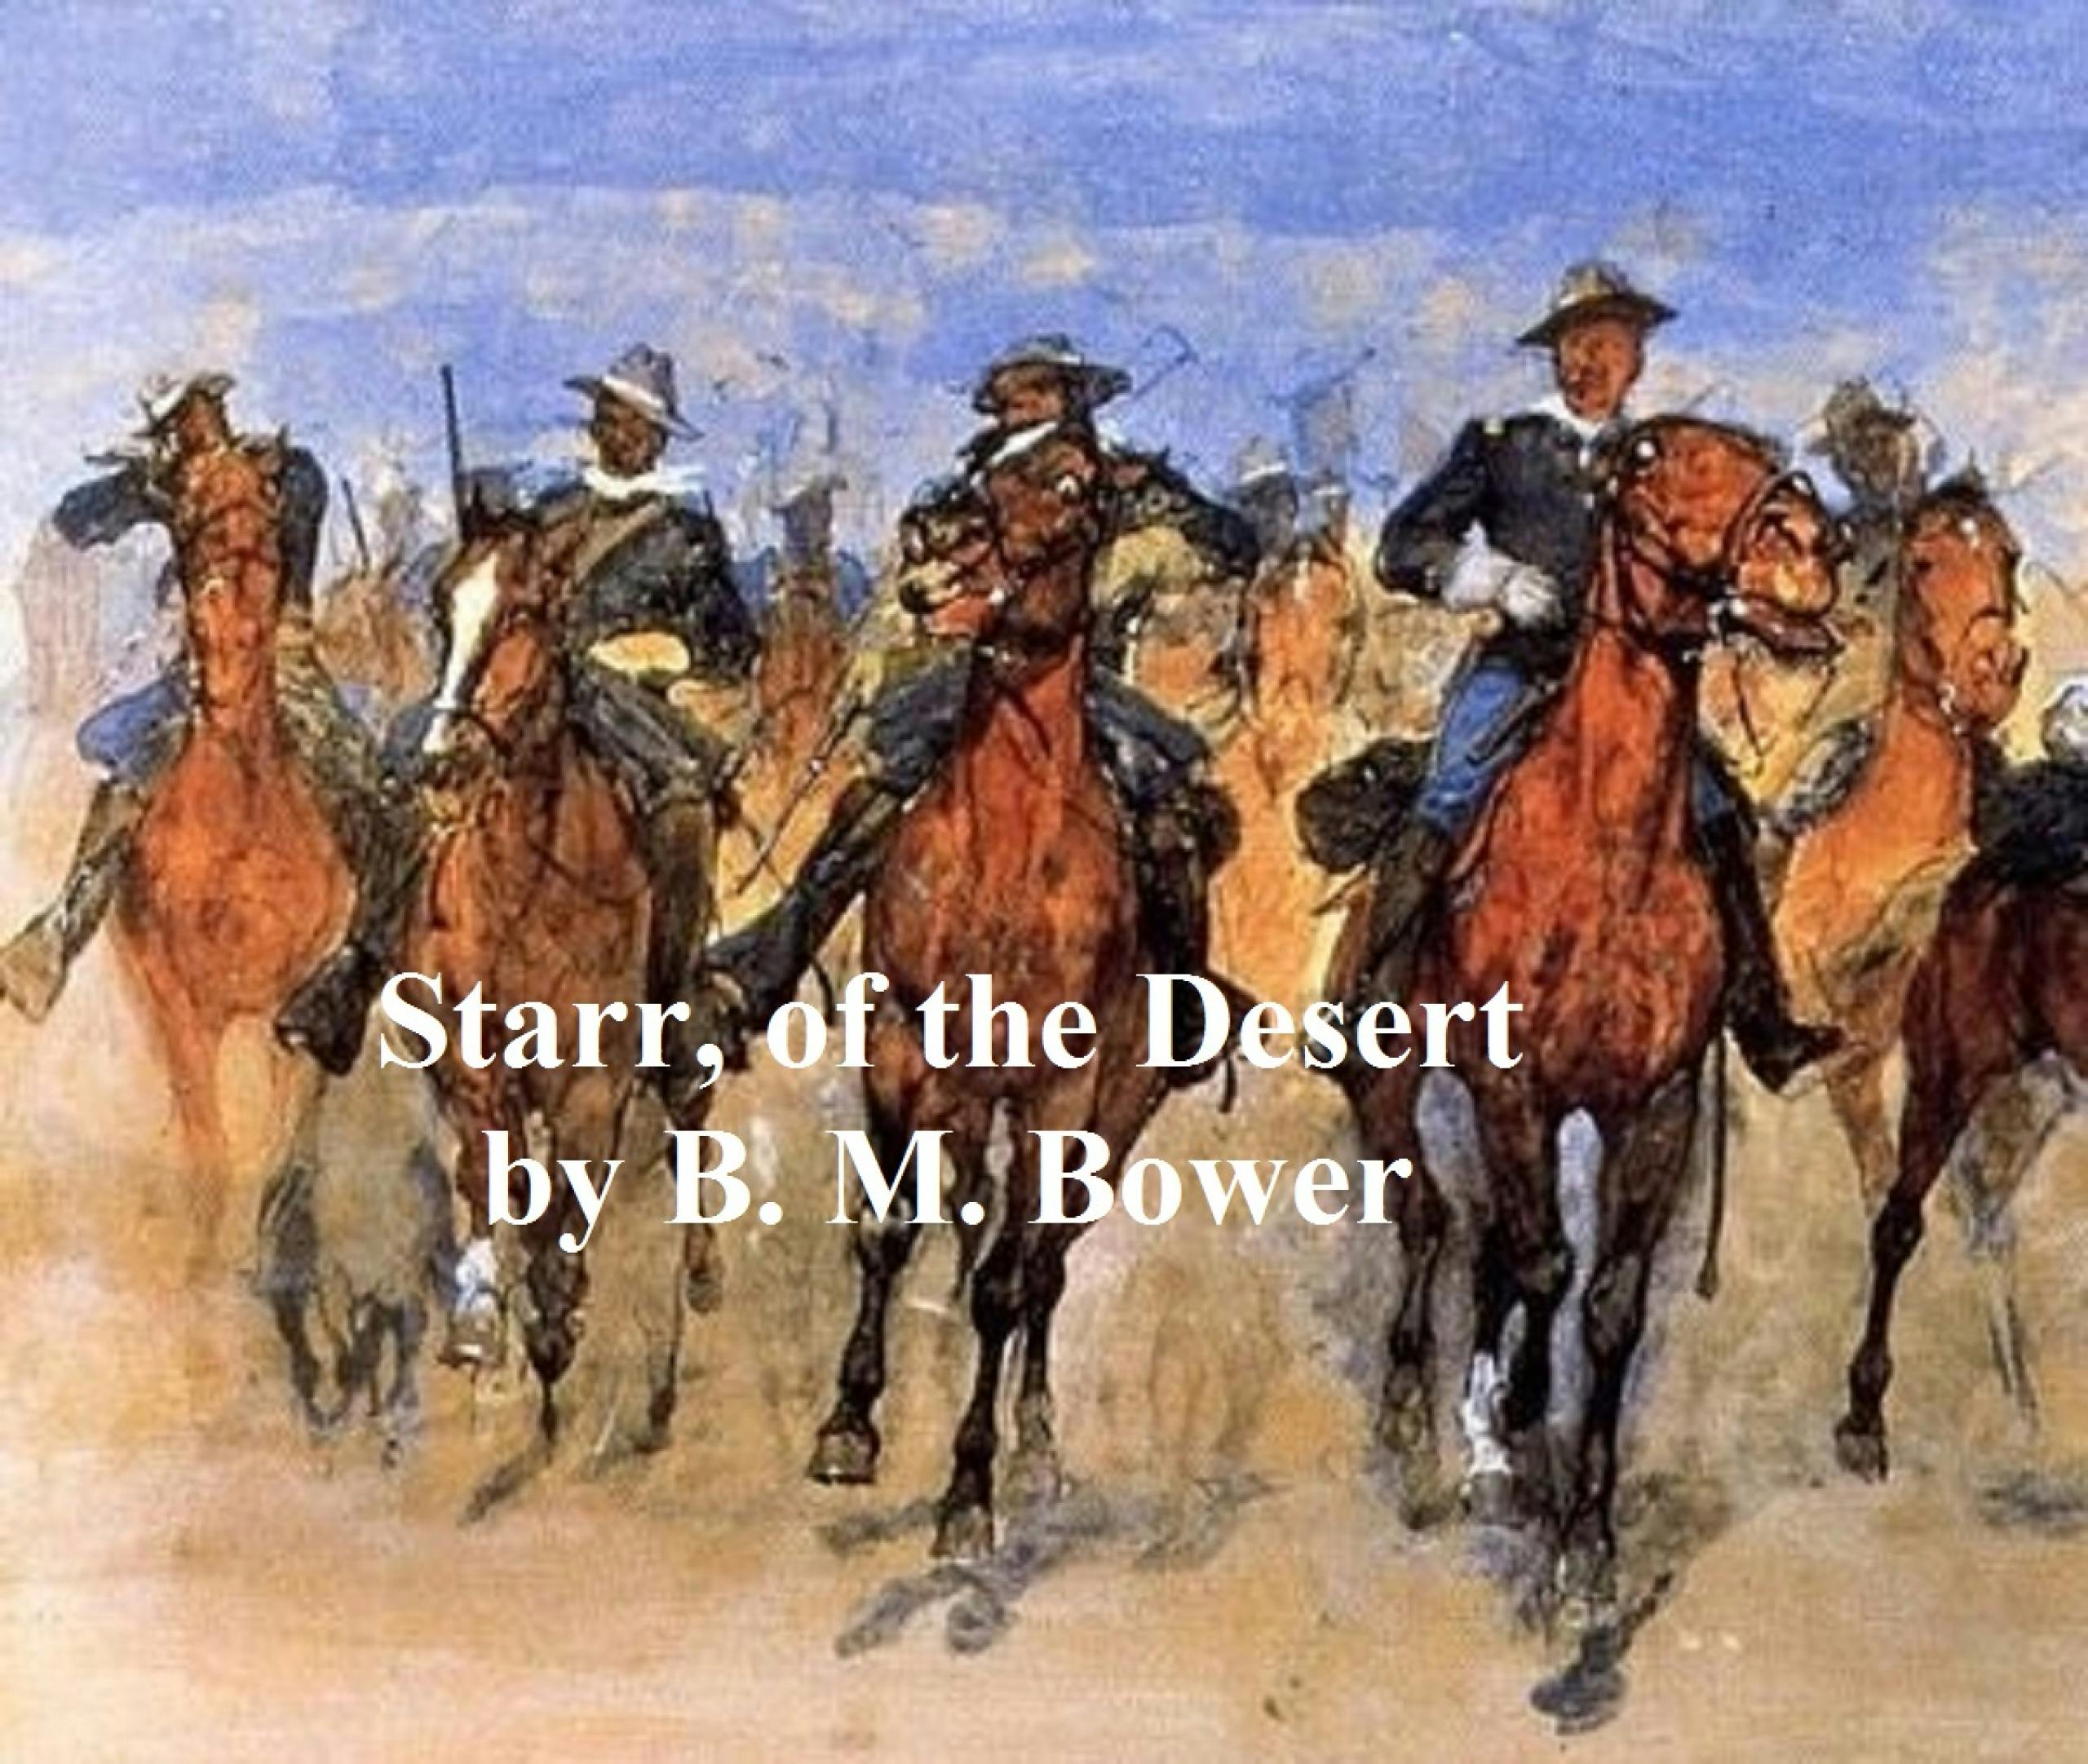 Starr of the Desert - B. M. Bower